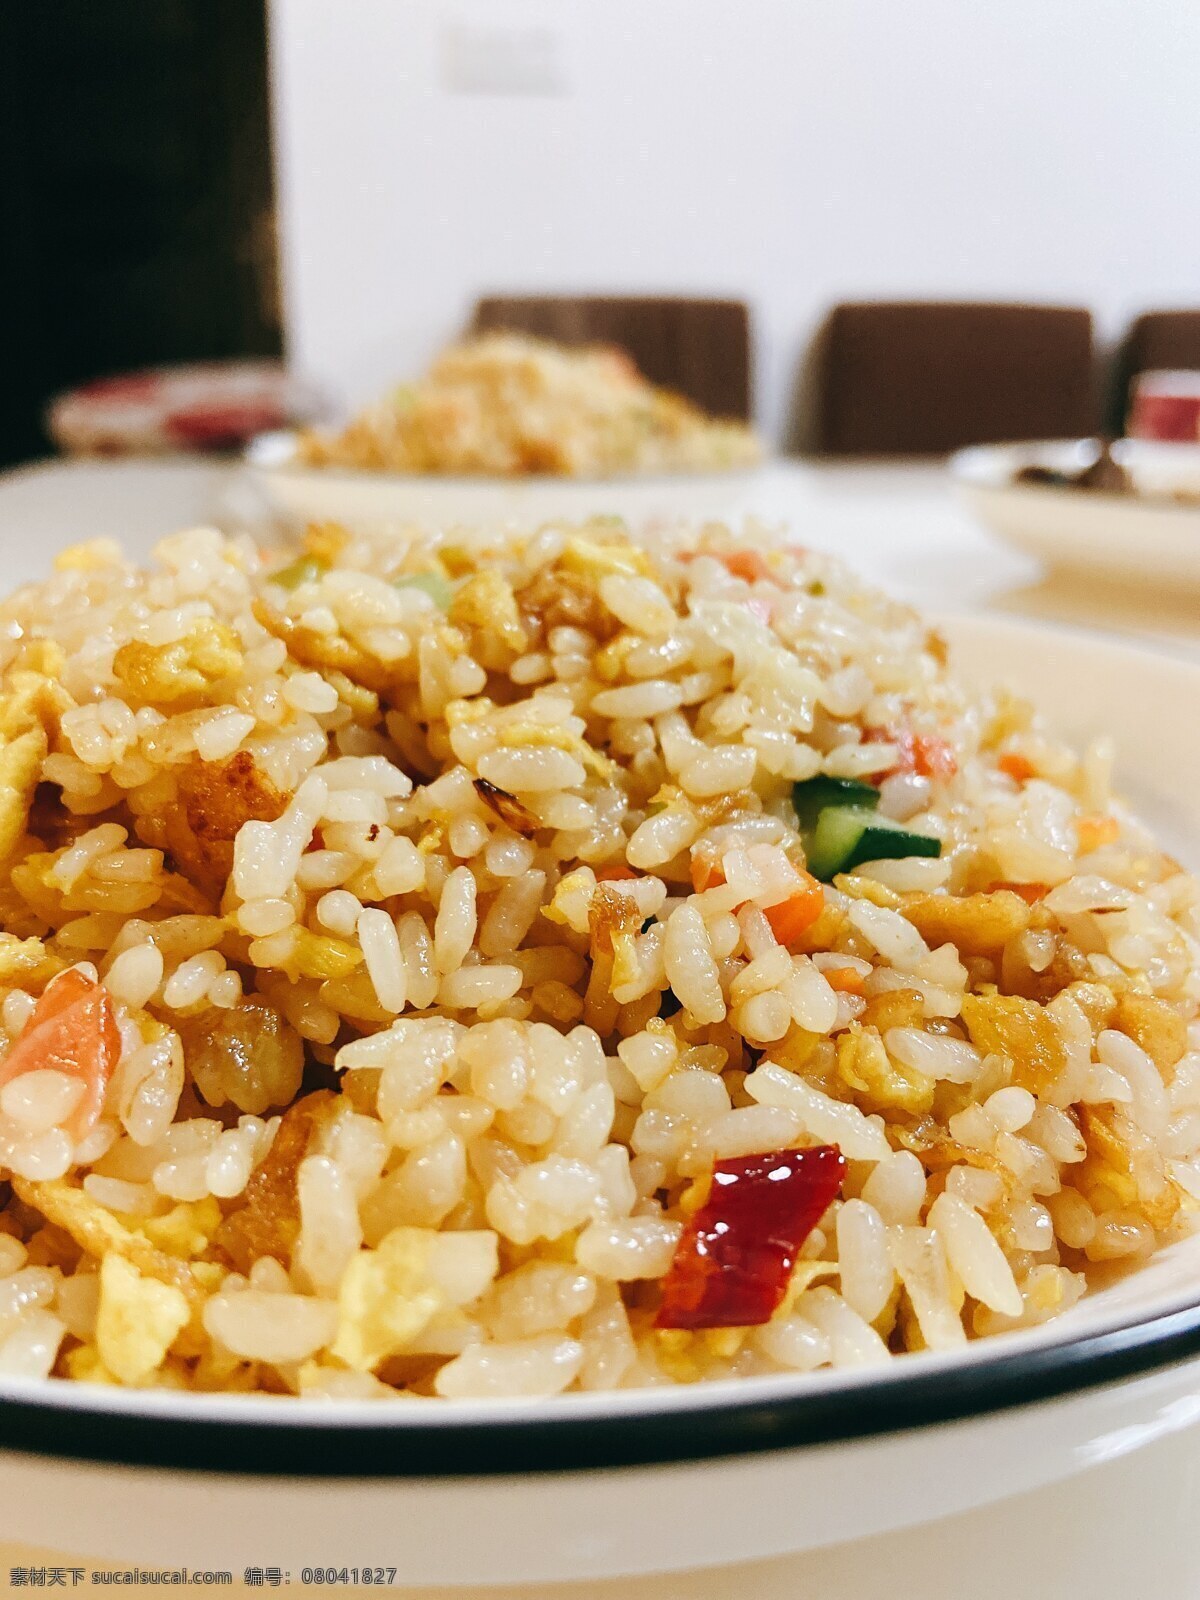 炒米饭 炒米 大米 美食 家常便饭 米 食物 美味 日常午餐 午餐 餐饮美食